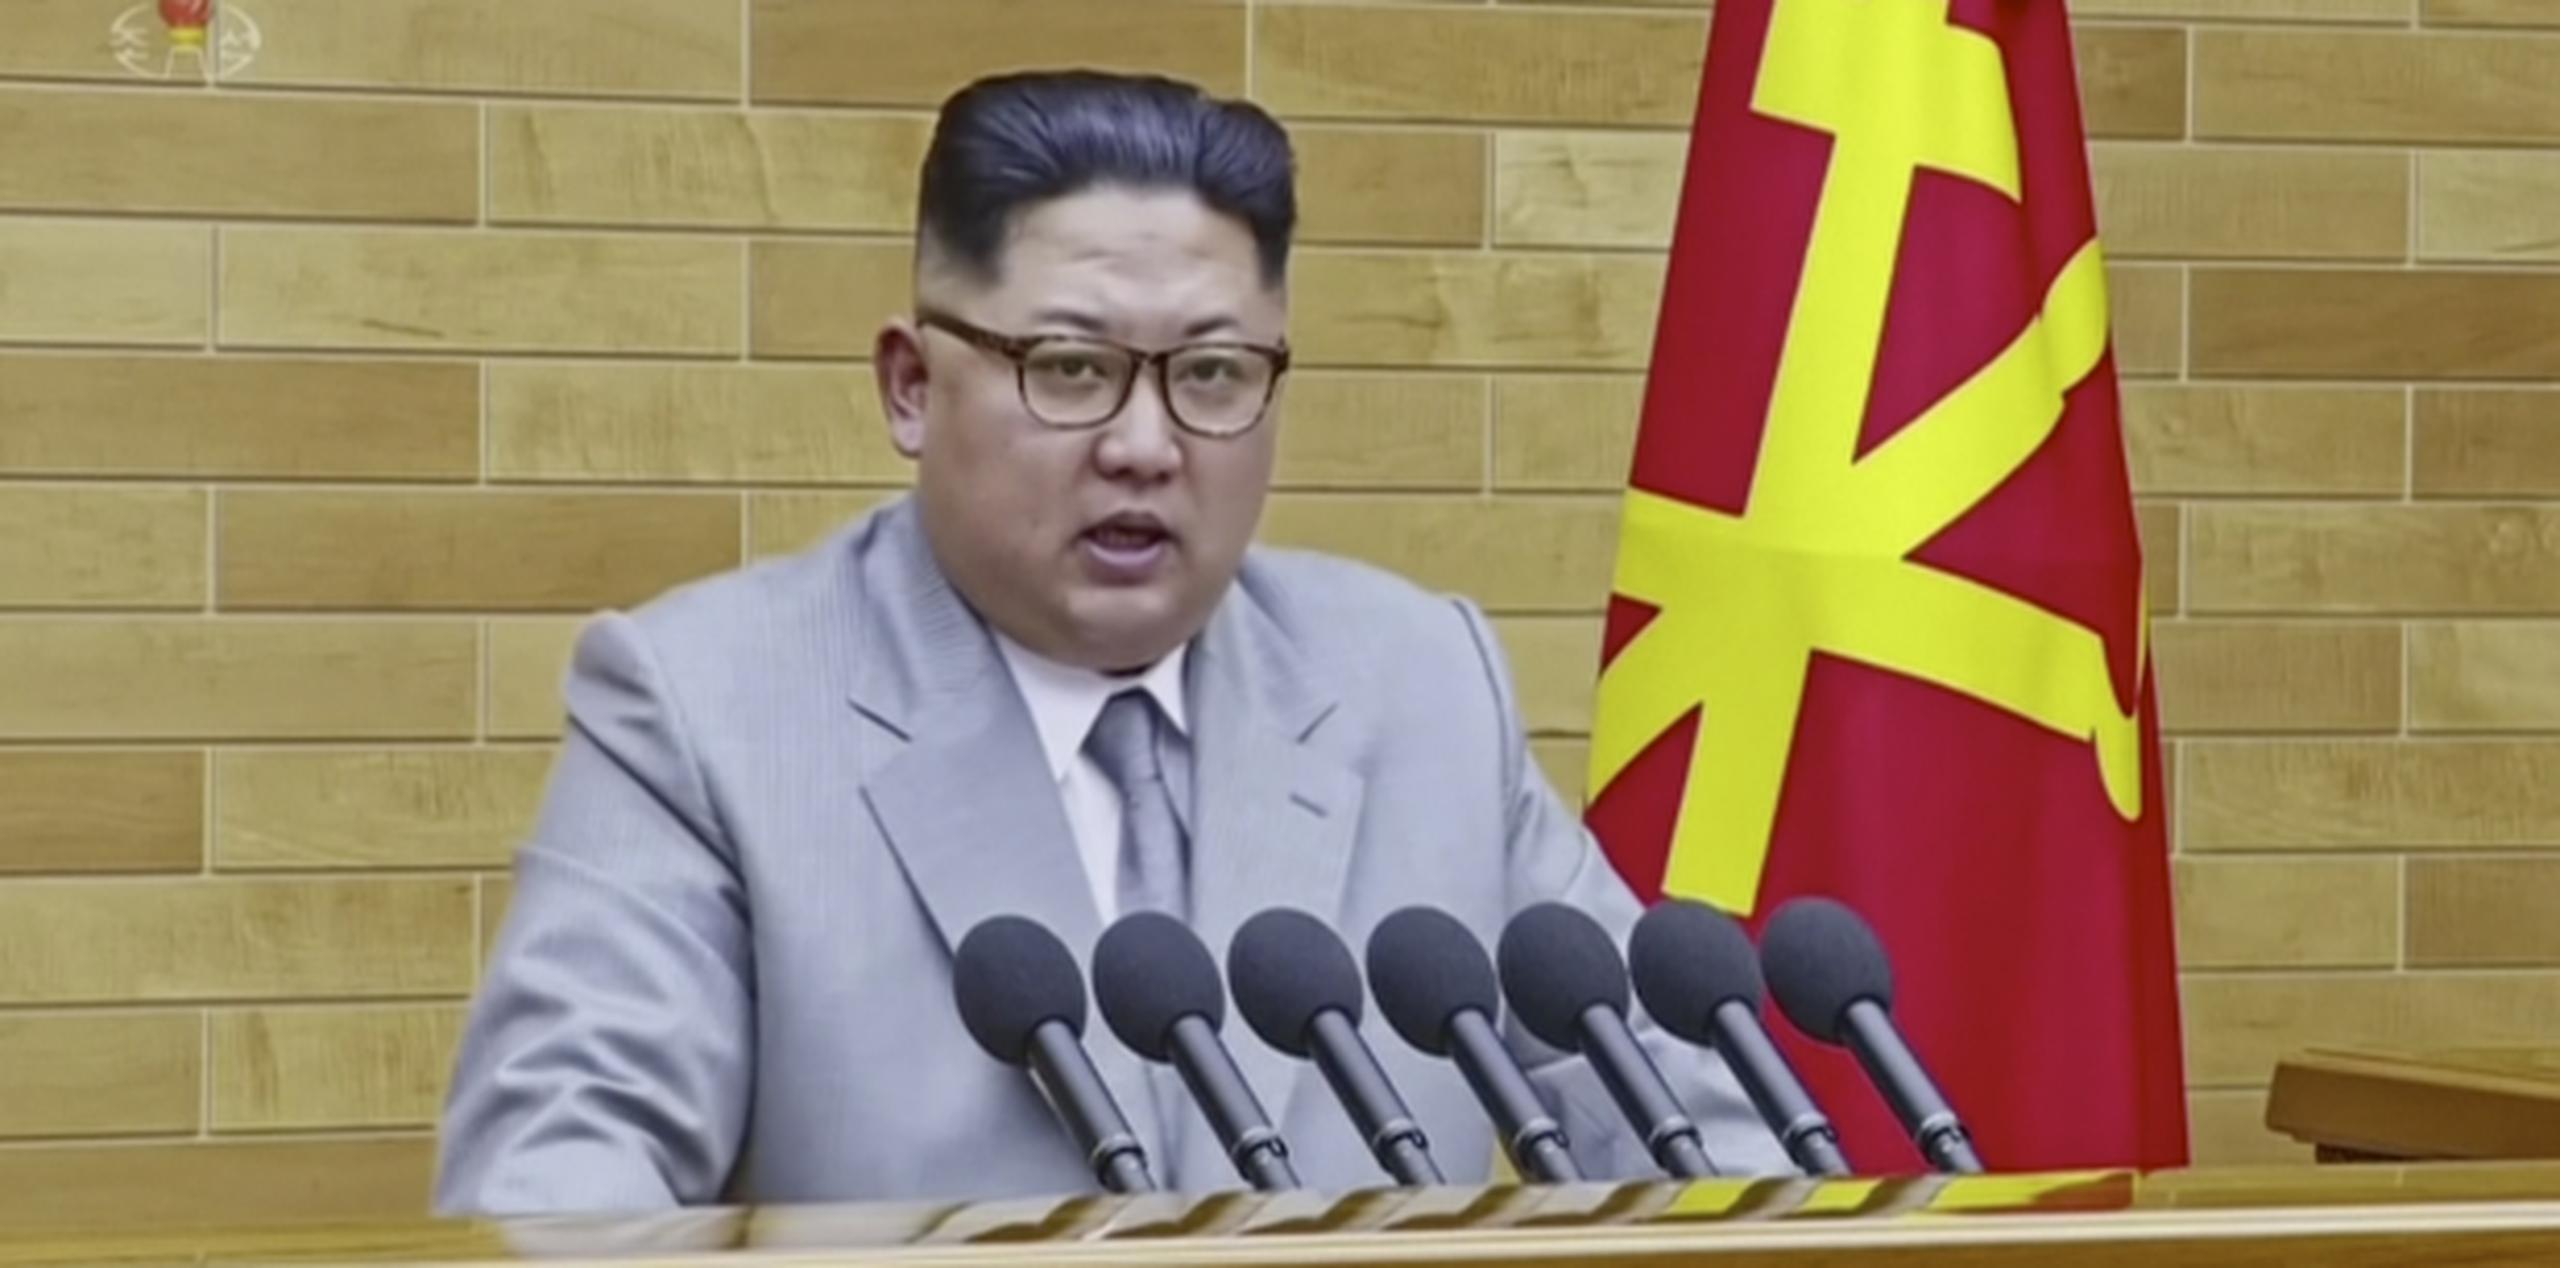 El líder norcoreano, Kim Jong Un, había sugerido en la víspera que la hermética nación podría enviar una delegación al evento olímpico de Pyeongchang. (KRT vía AP Video)